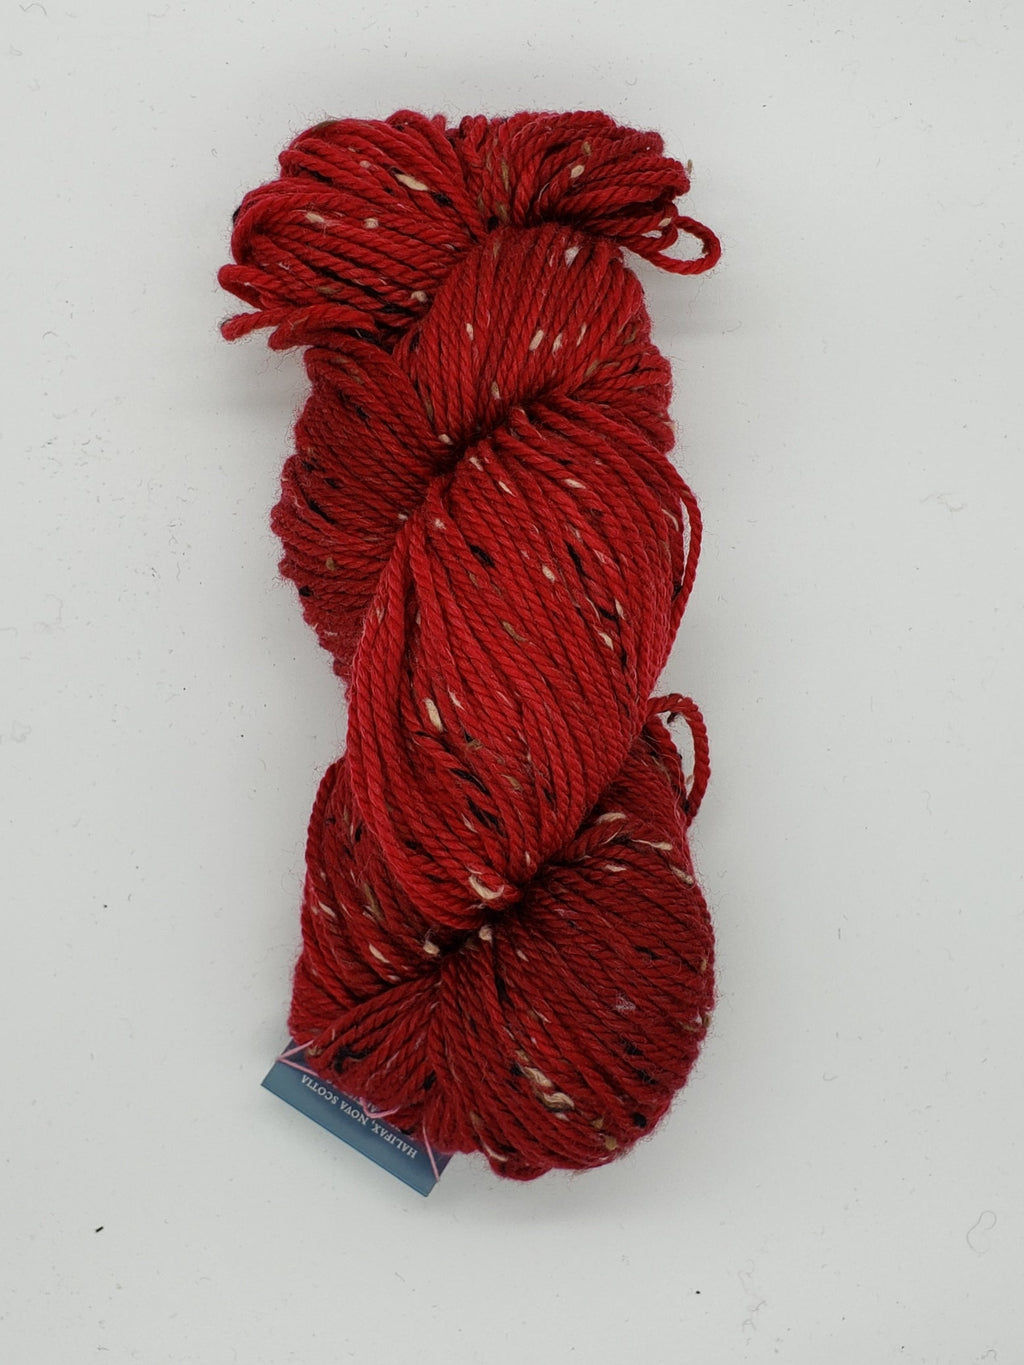 Thicket Tweedy - CURRANT - Aran Hand Dyed Yarn